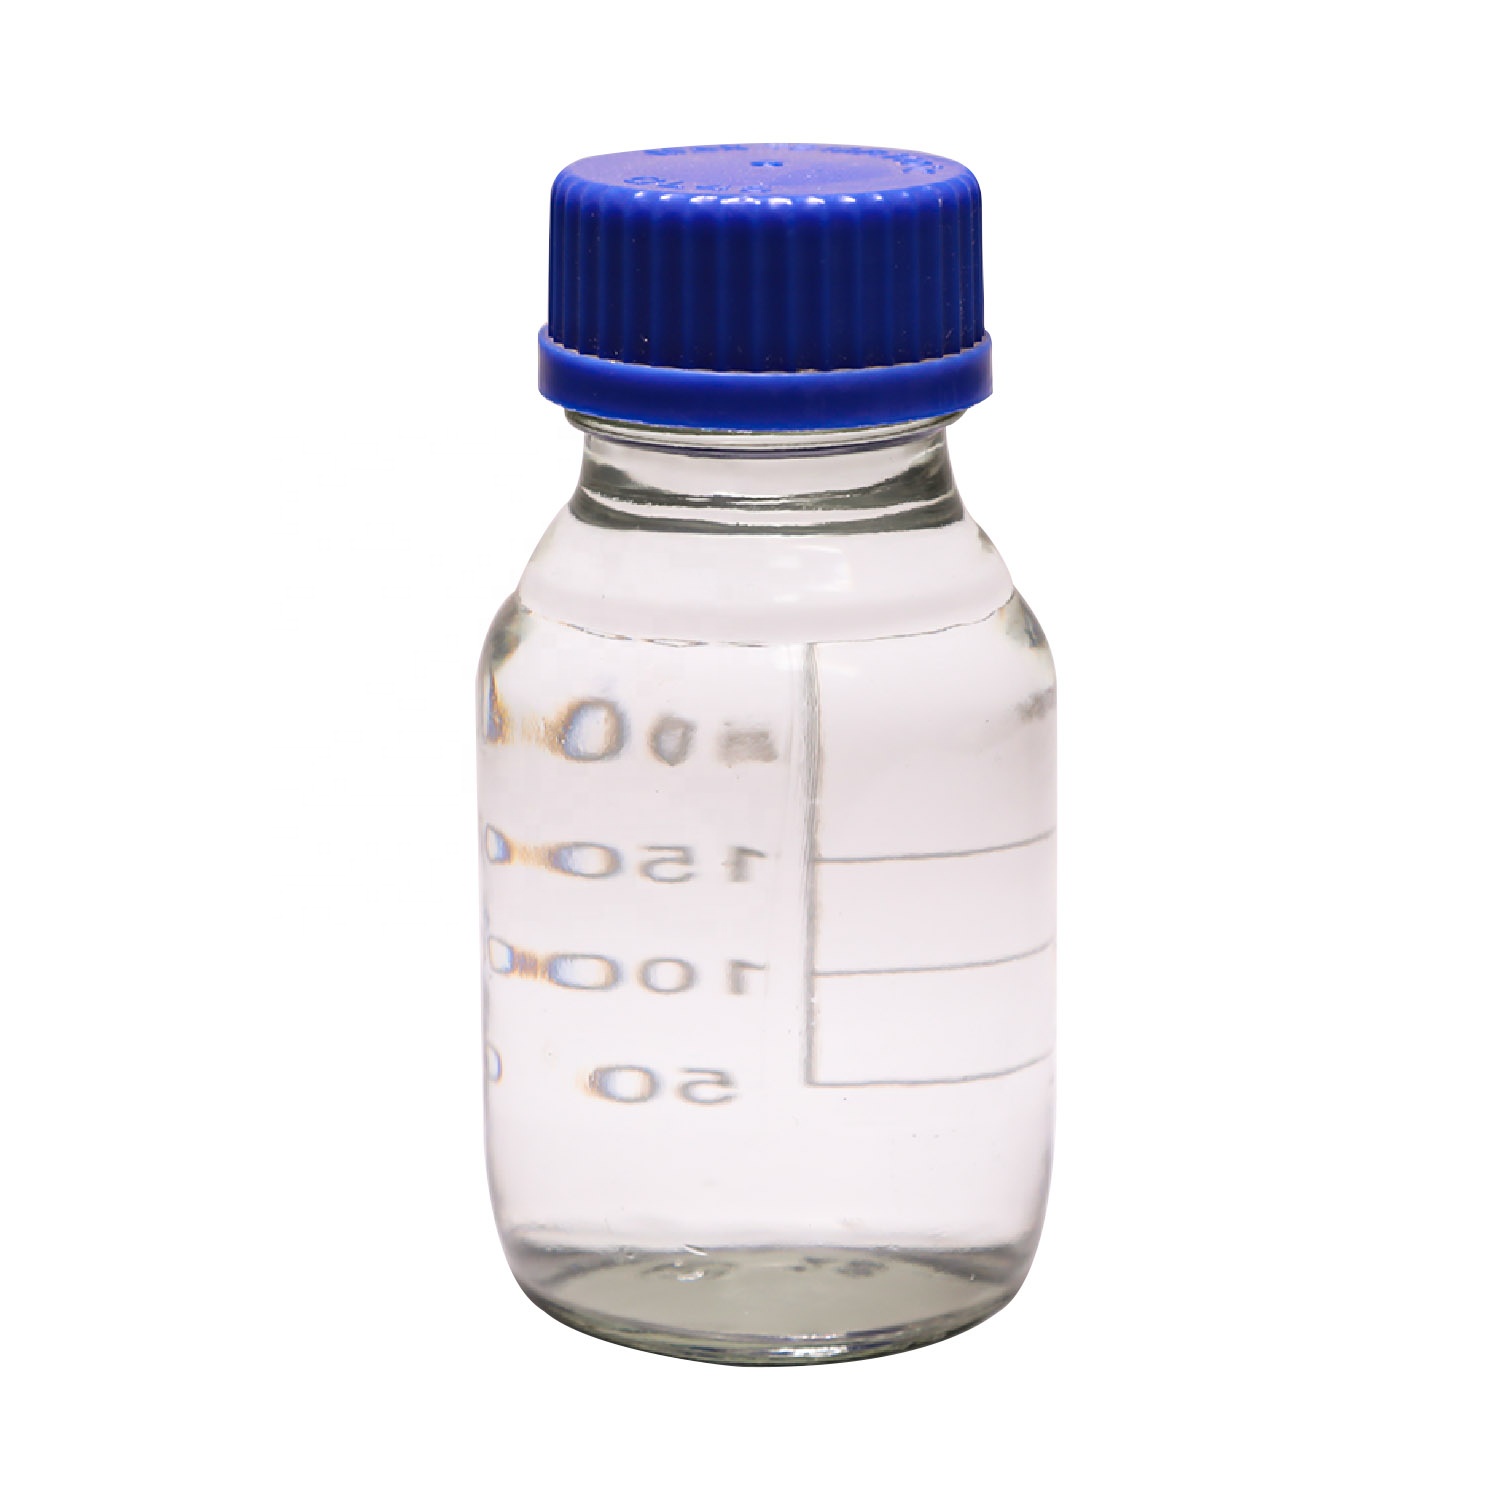 ซื้อตัวทำละลายอินทรีย์ เตตระไฮโดรฟูแรน CAS
 109-99-9,ตัวทำละลายอินทรีย์ เตตระไฮโดรฟูแรน CAS
 109-99-9ราคา,ตัวทำละลายอินทรีย์ เตตระไฮโดรฟูแรน CAS
 109-99-9แบรนด์,ตัวทำละลายอินทรีย์ เตตระไฮโดรฟูแรน CAS
 109-99-9ผู้ผลิต,ตัวทำละลายอินทรีย์ เตตระไฮโดรฟูแรน CAS
 109-99-9สภาวะตลาด,ตัวทำละลายอินทรีย์ เตตระไฮโดรฟูแรน CAS
 109-99-9บริษัท